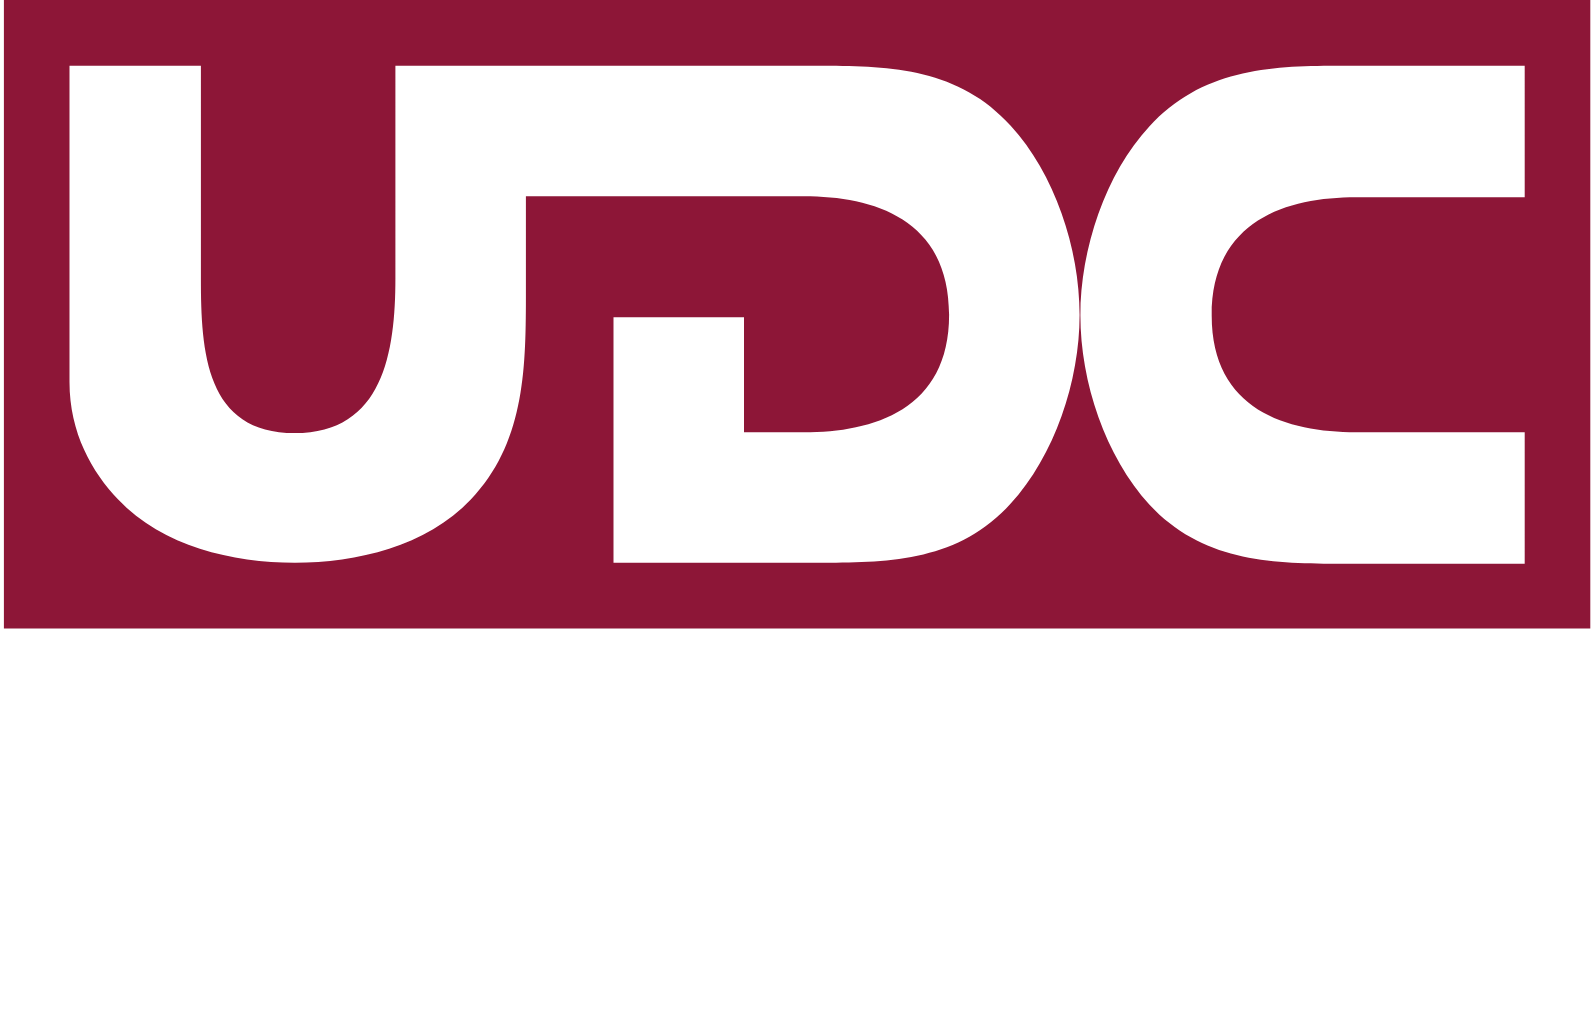 United Development Company logo grand pour les fonds sombres (PNG transparent)